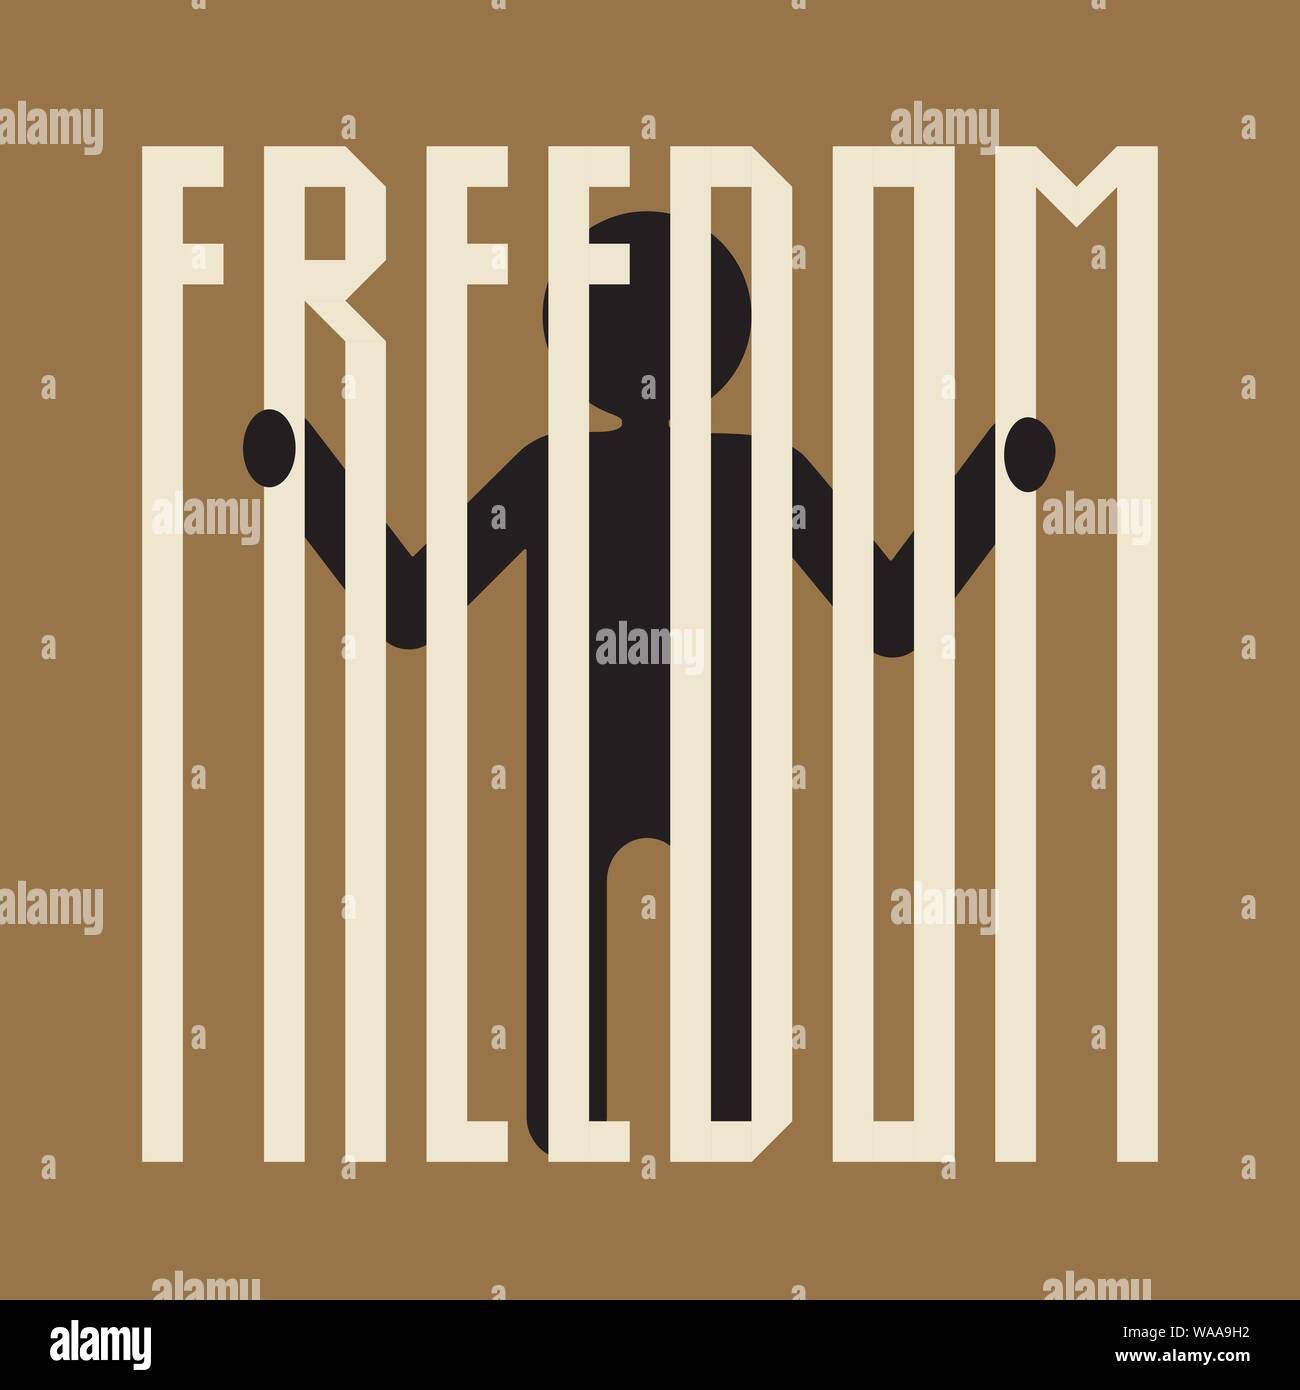 Täuschung der freien Wahl eine Person hinter Gittern bilden ein Wort Freiheit Stock Vektor